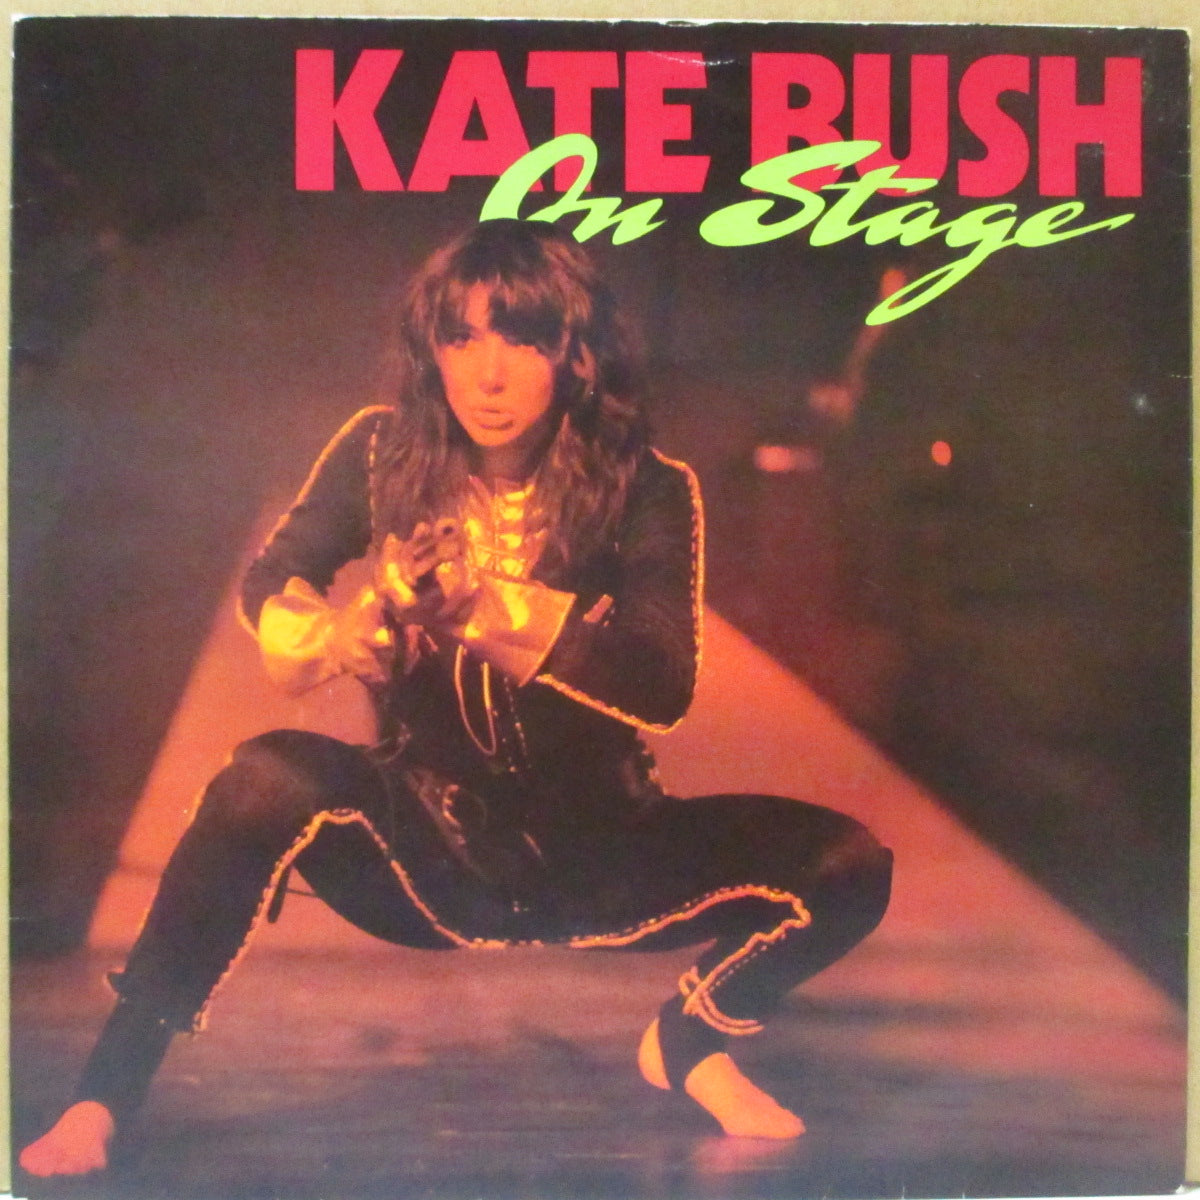 KATE BUSH (ケイト・ブッシュ) - On Stage (UK オリジナル 7